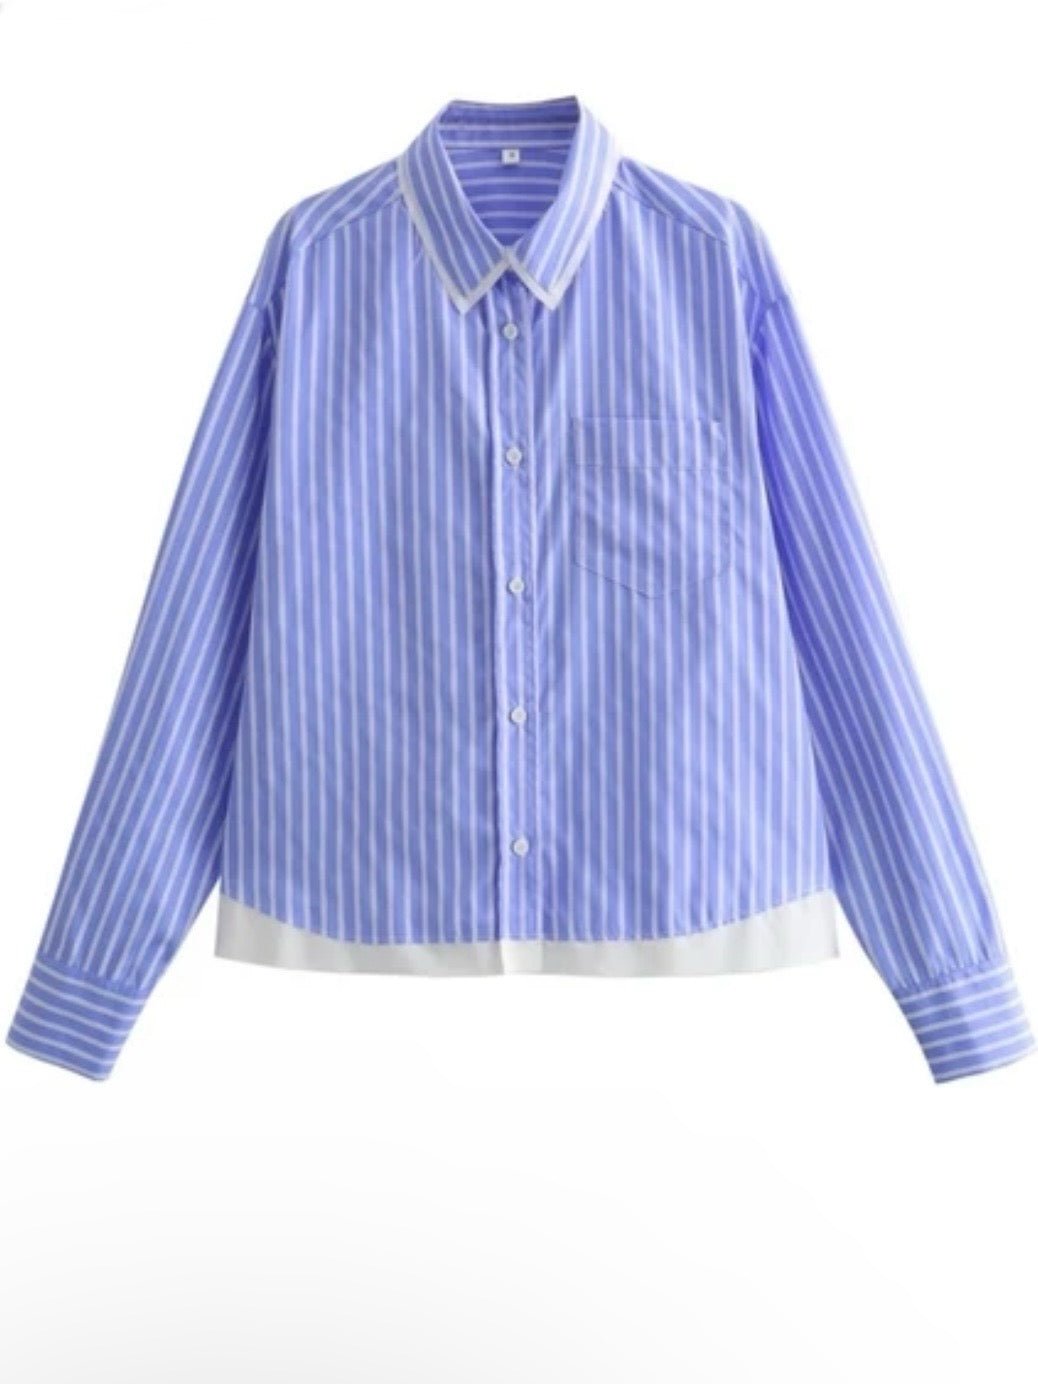 Light blue striped front shirt - Wapas